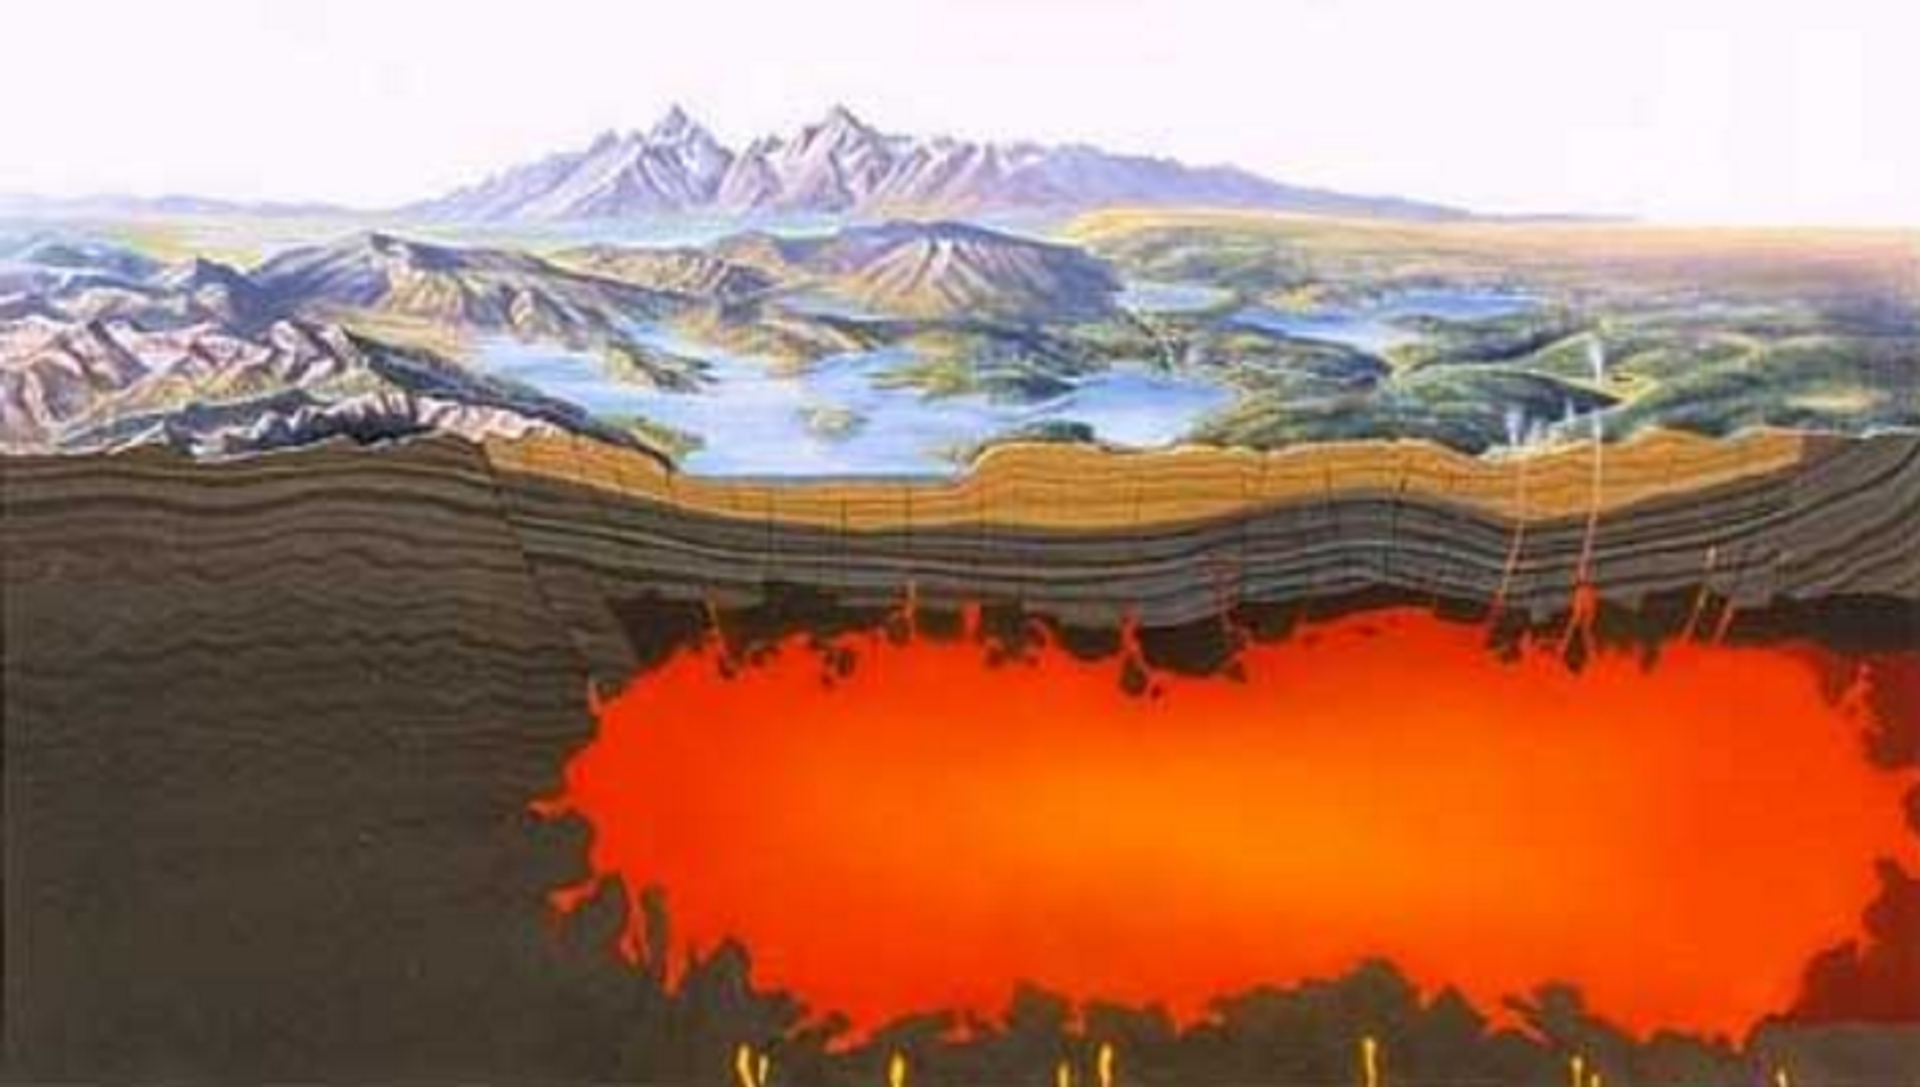 Erupção de supervulcão Yellowstone nos EUA pode cobrir continente com cinzas, diz especialista - Sputnik Brasil, 1920, 21.05.2021